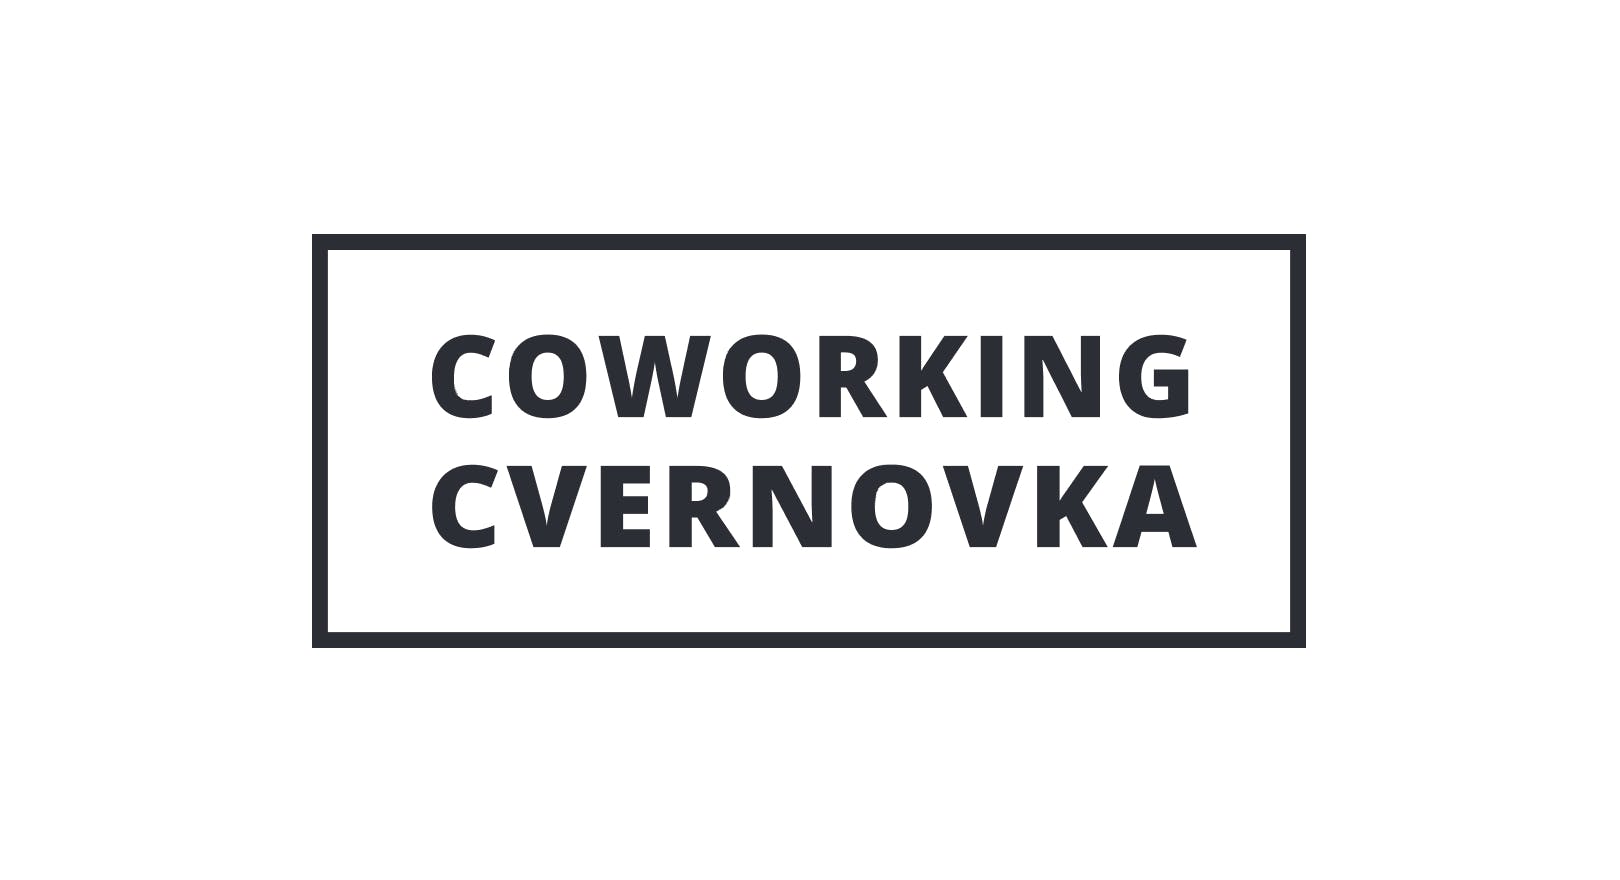 Coworking Cvernovka